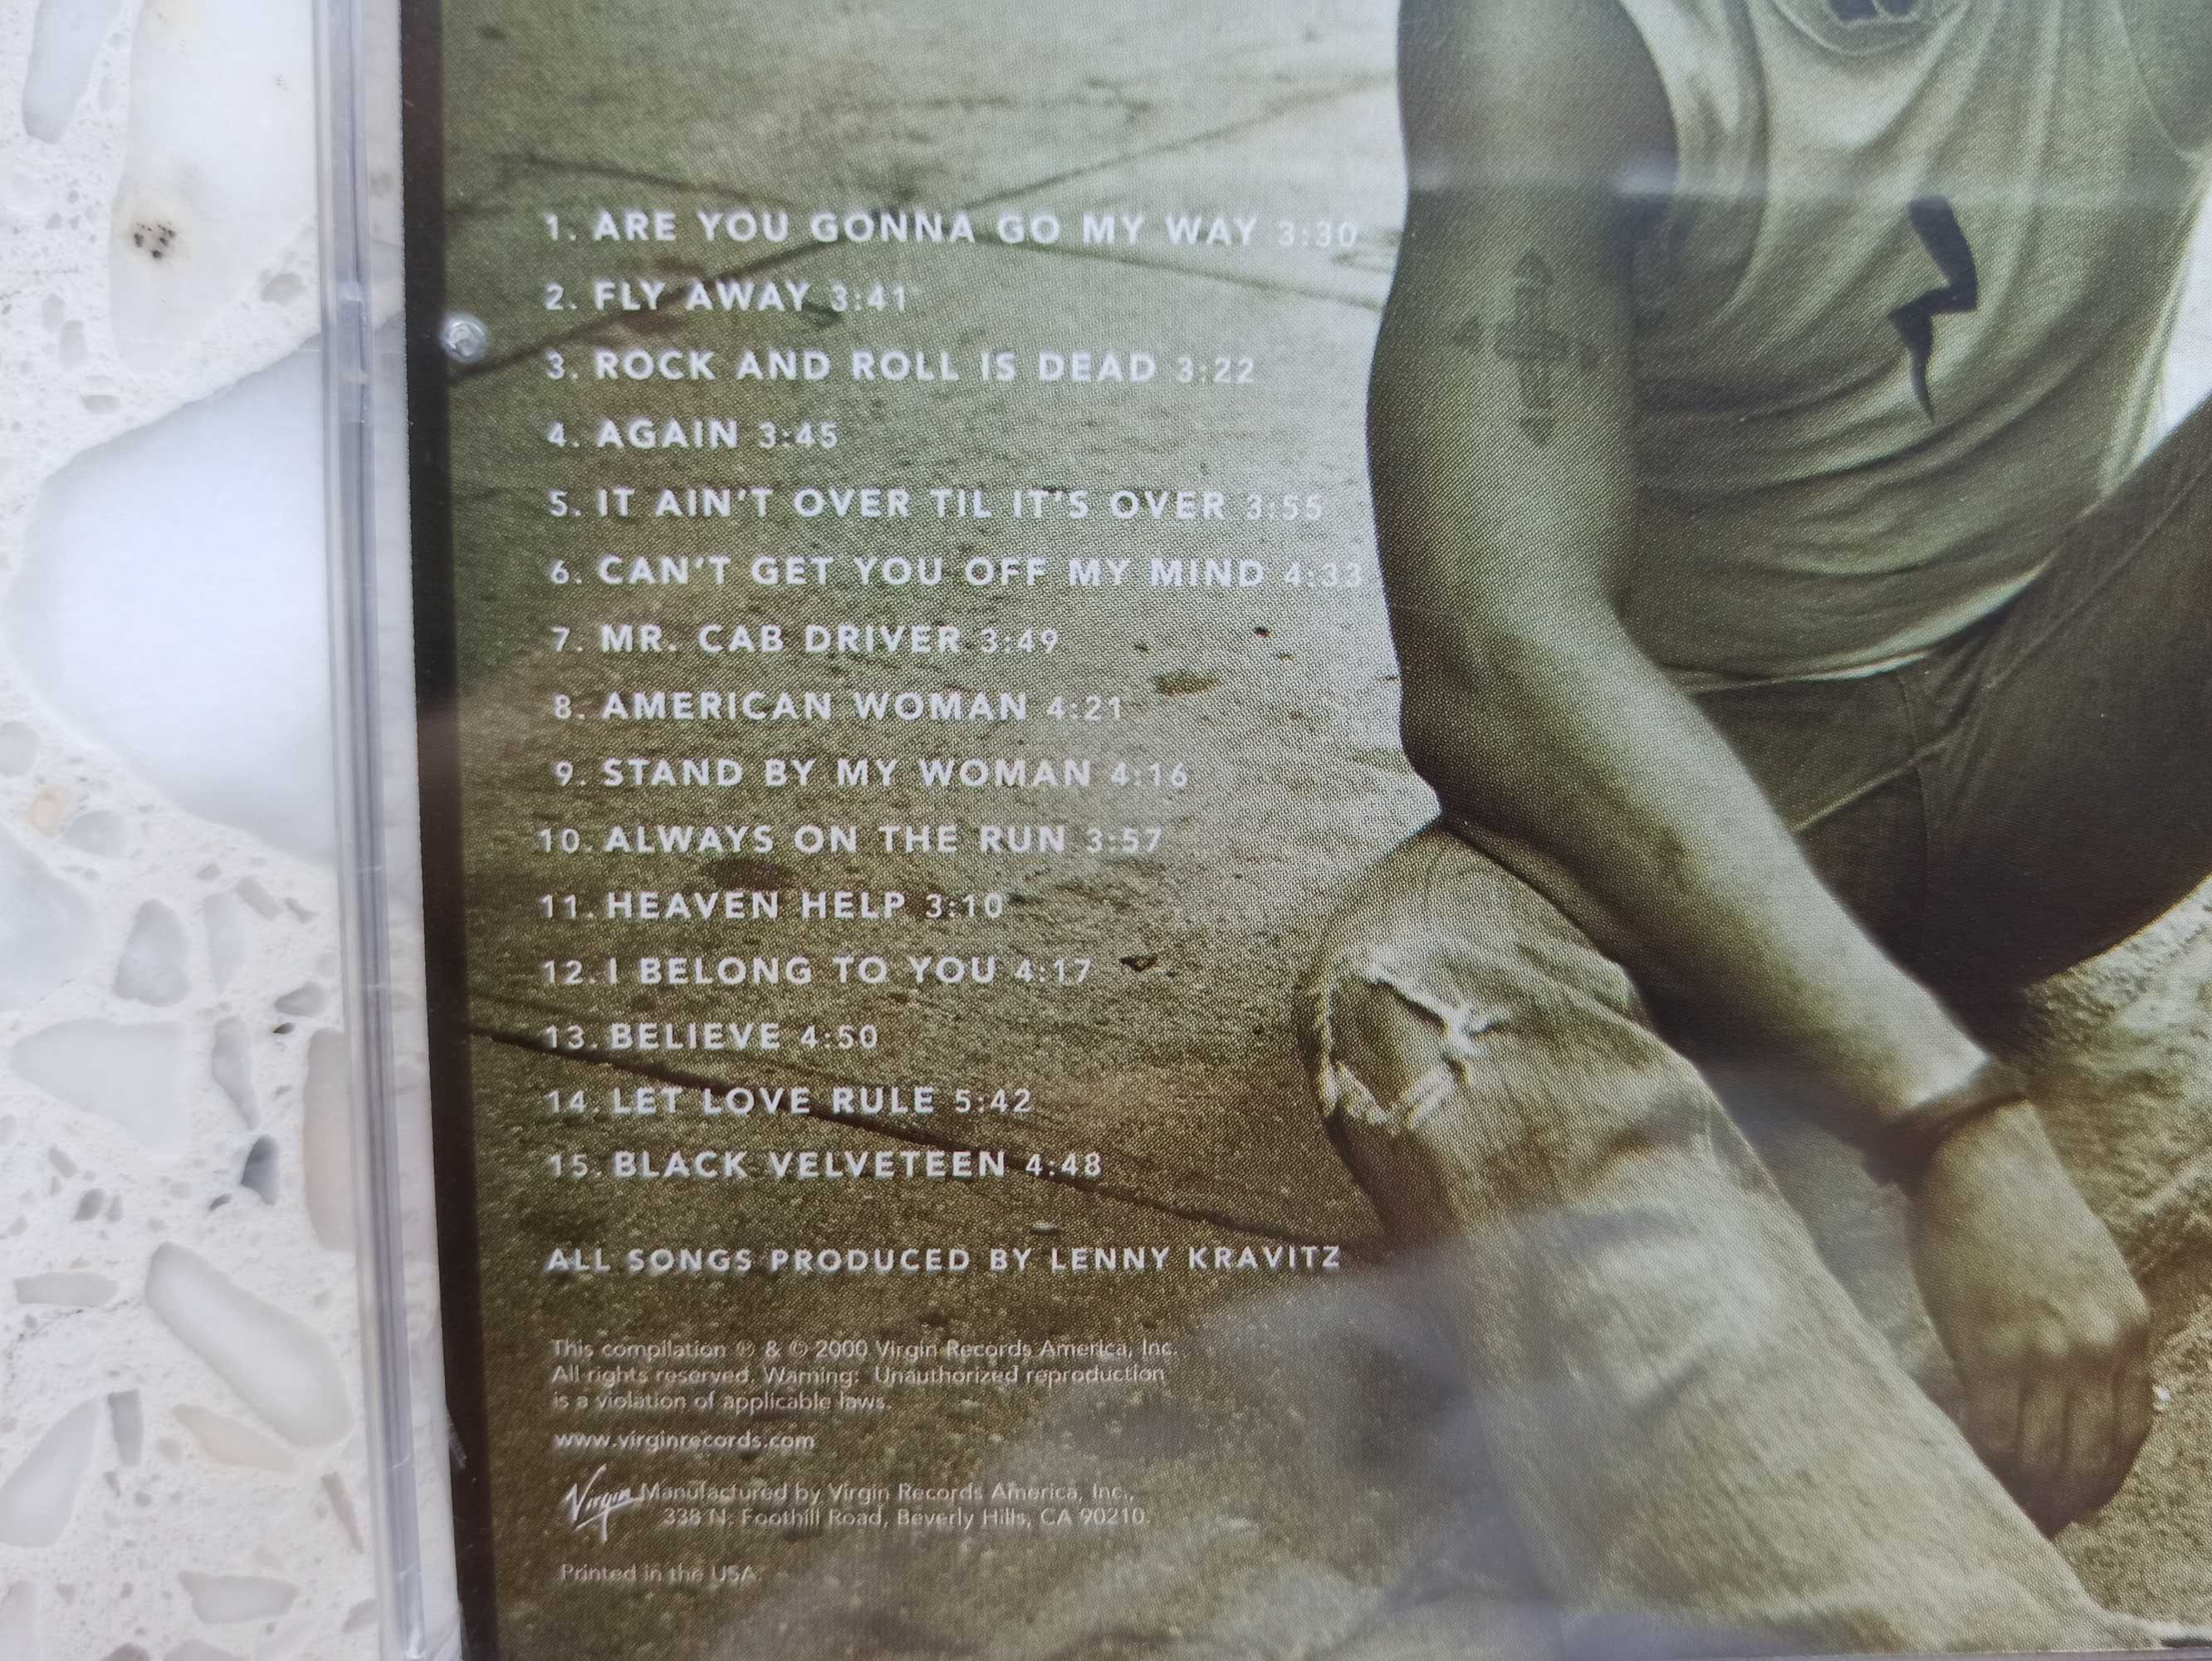 "GREATEST HITS" Lenny Kravitz (album z 2000 roku)